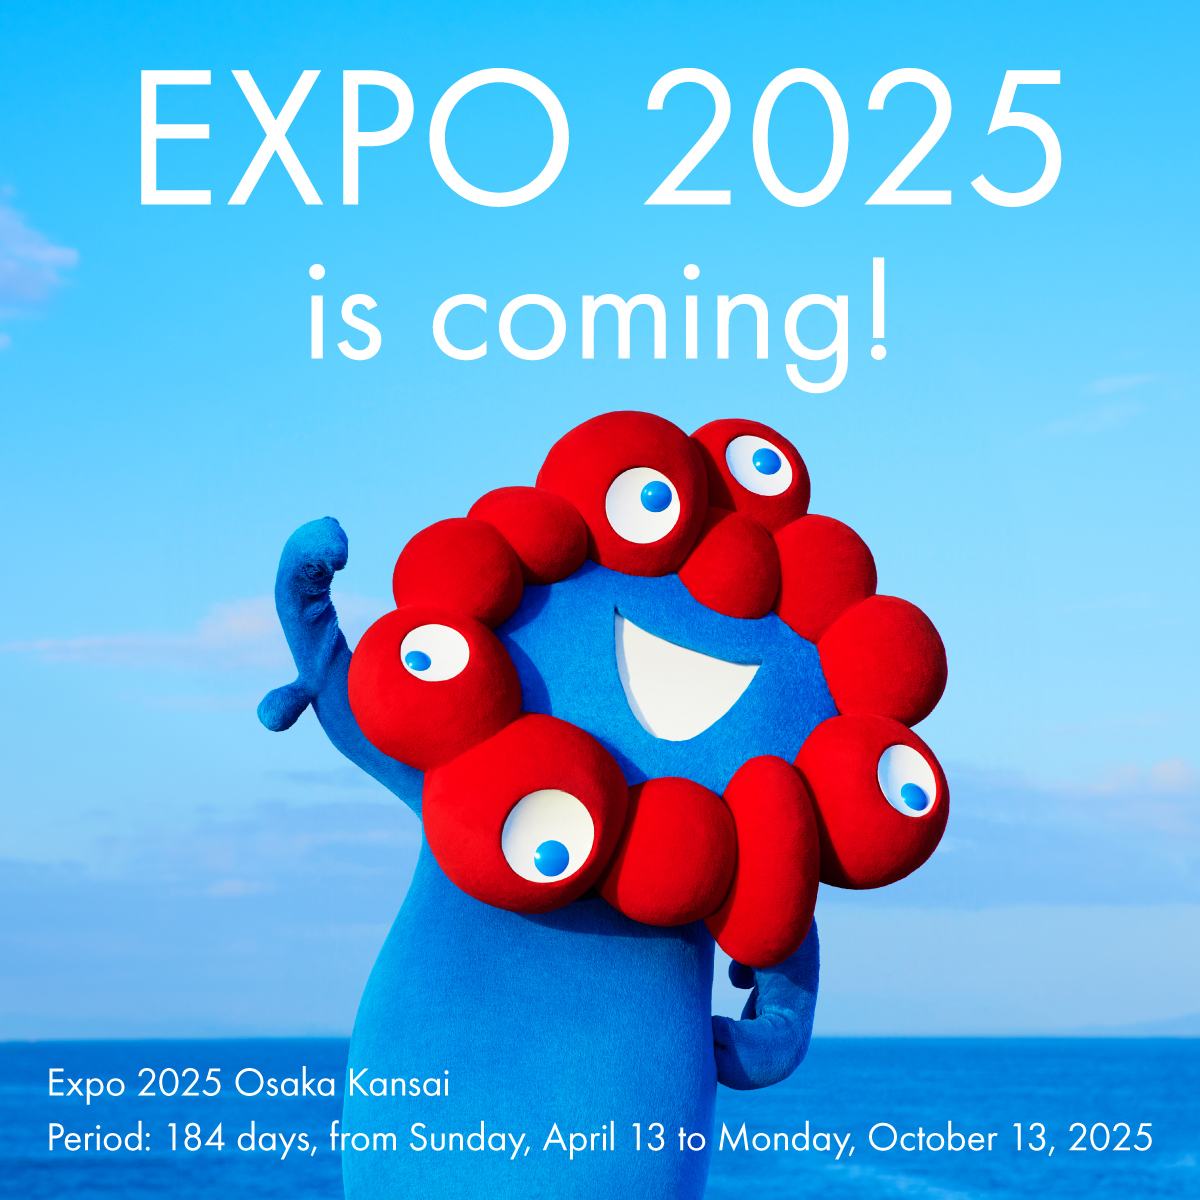 500 days before Expo 2025 Osaka, Kansai, Japan